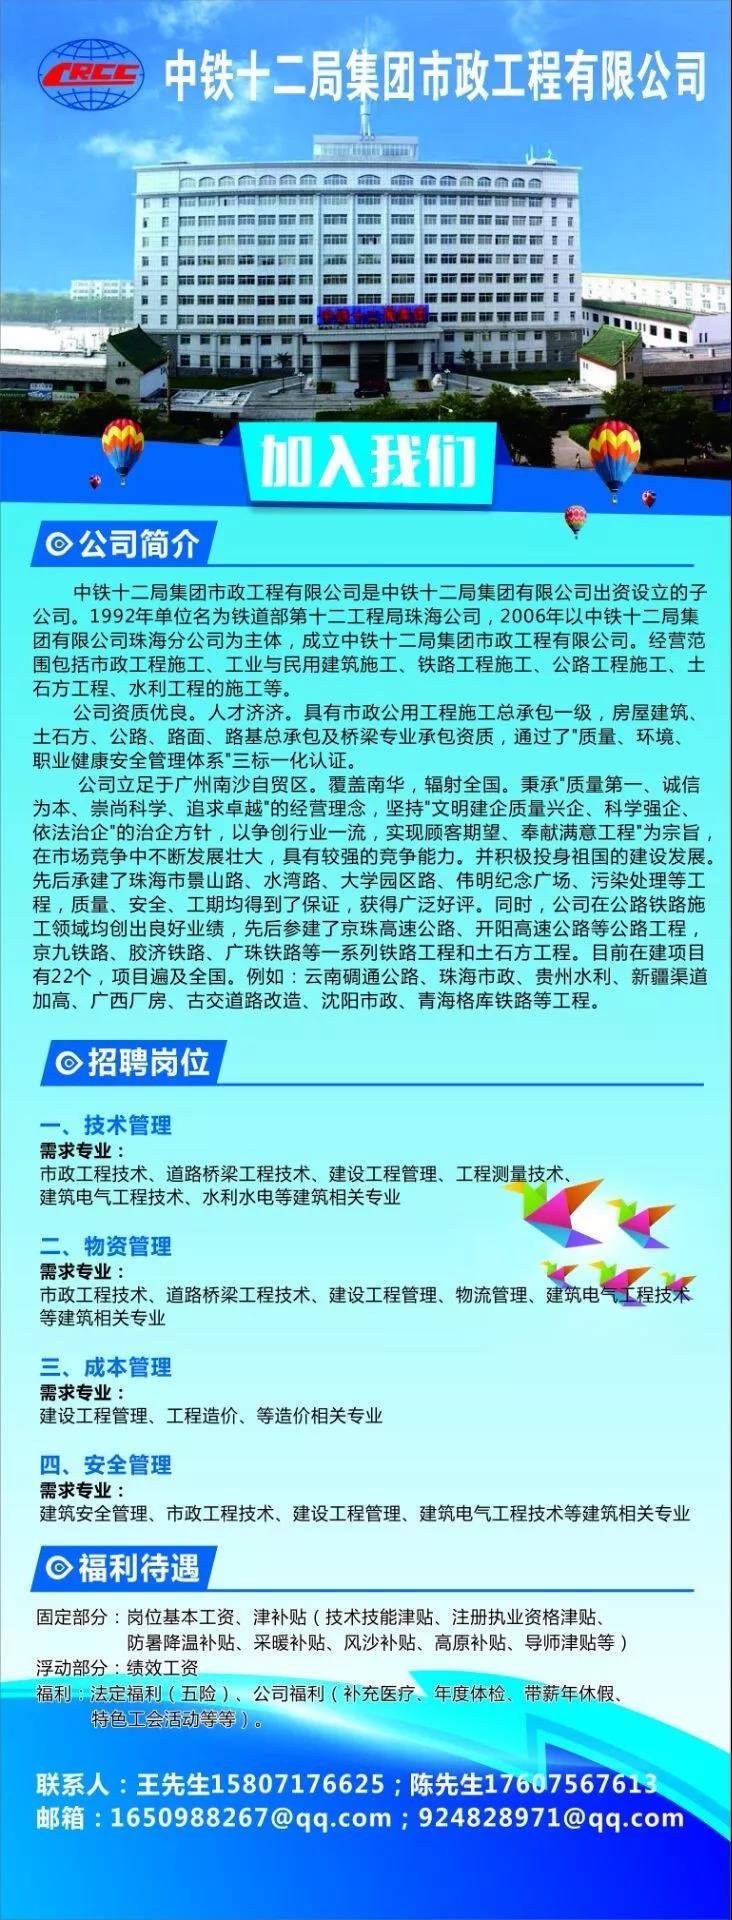 企业简介中国铁建港航狮扑体育局集团有限公司校园招聘公告（10月21日